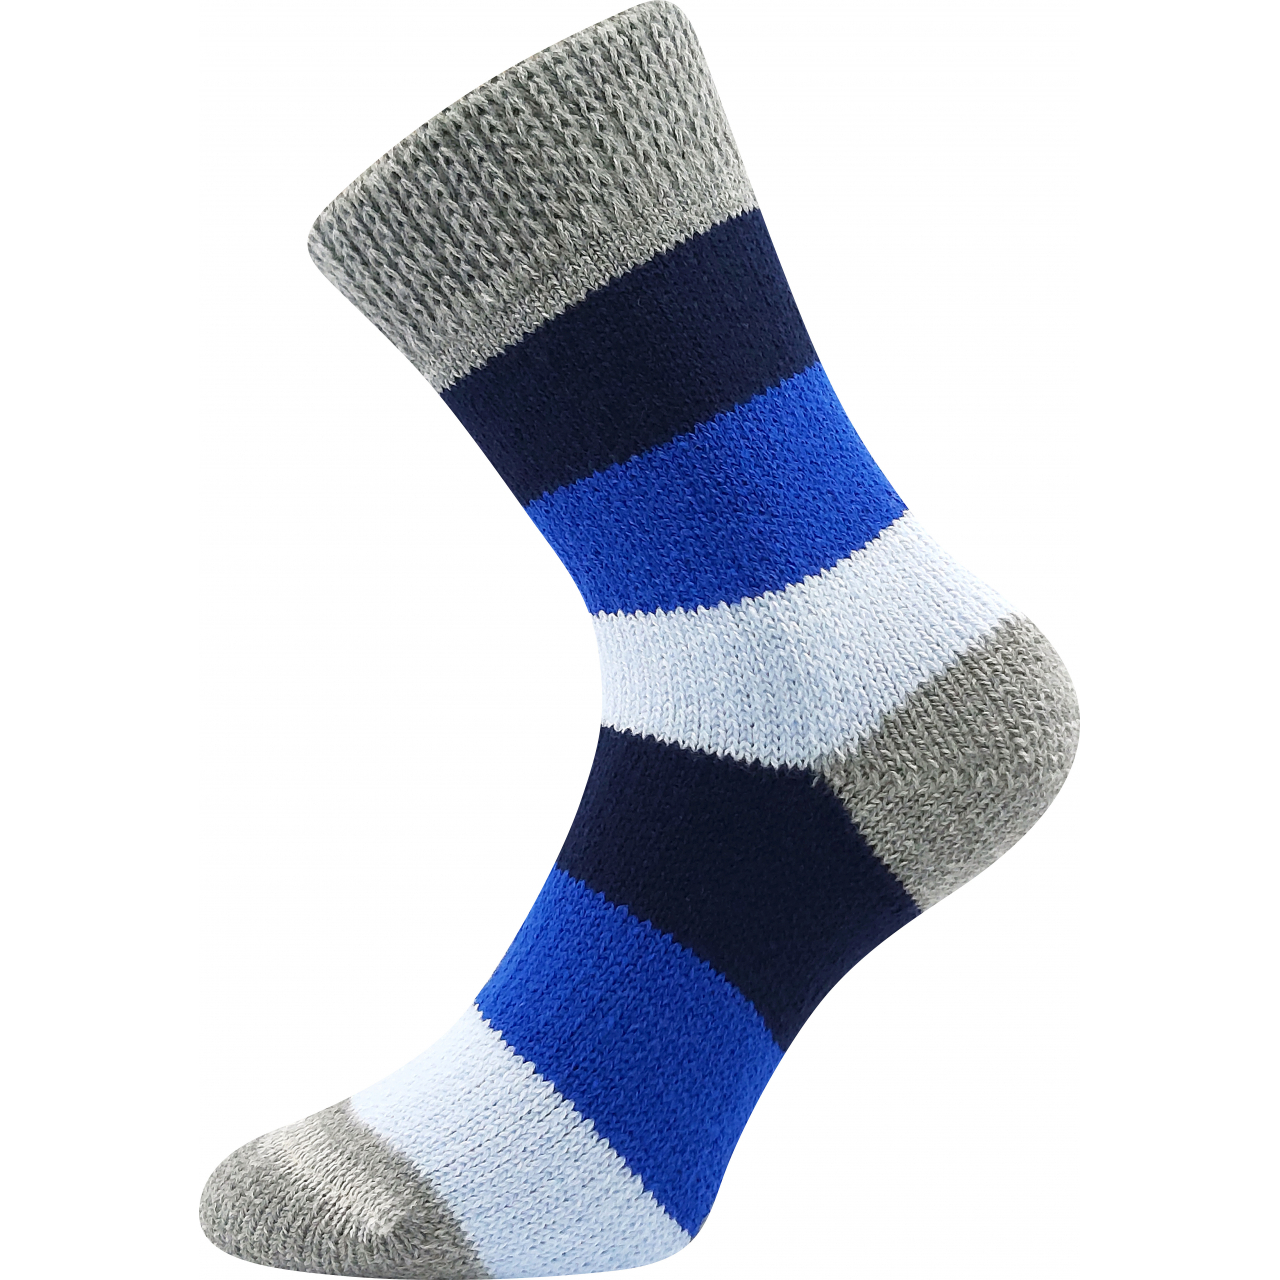 Ponožky spací unisex Boma Spací Pruh - modré-šedé, 35-38